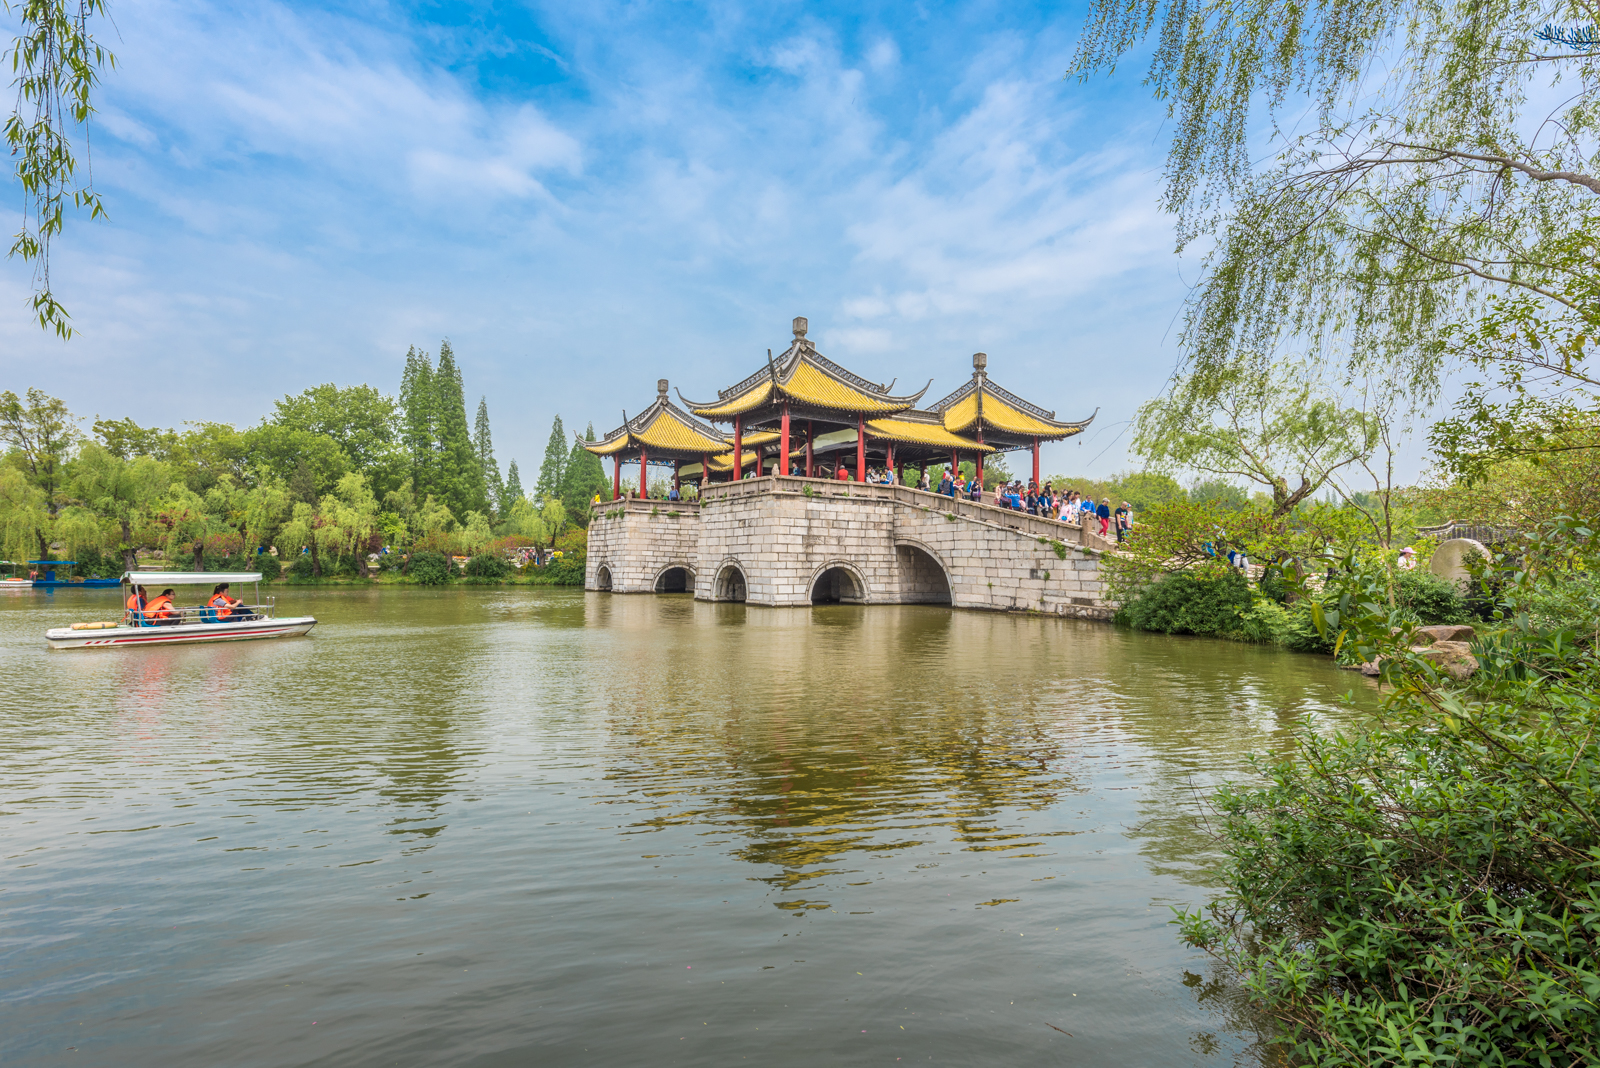 扬州景区有哪些景点如何评价扬州这个城市有哪些旅游景点值得推荐